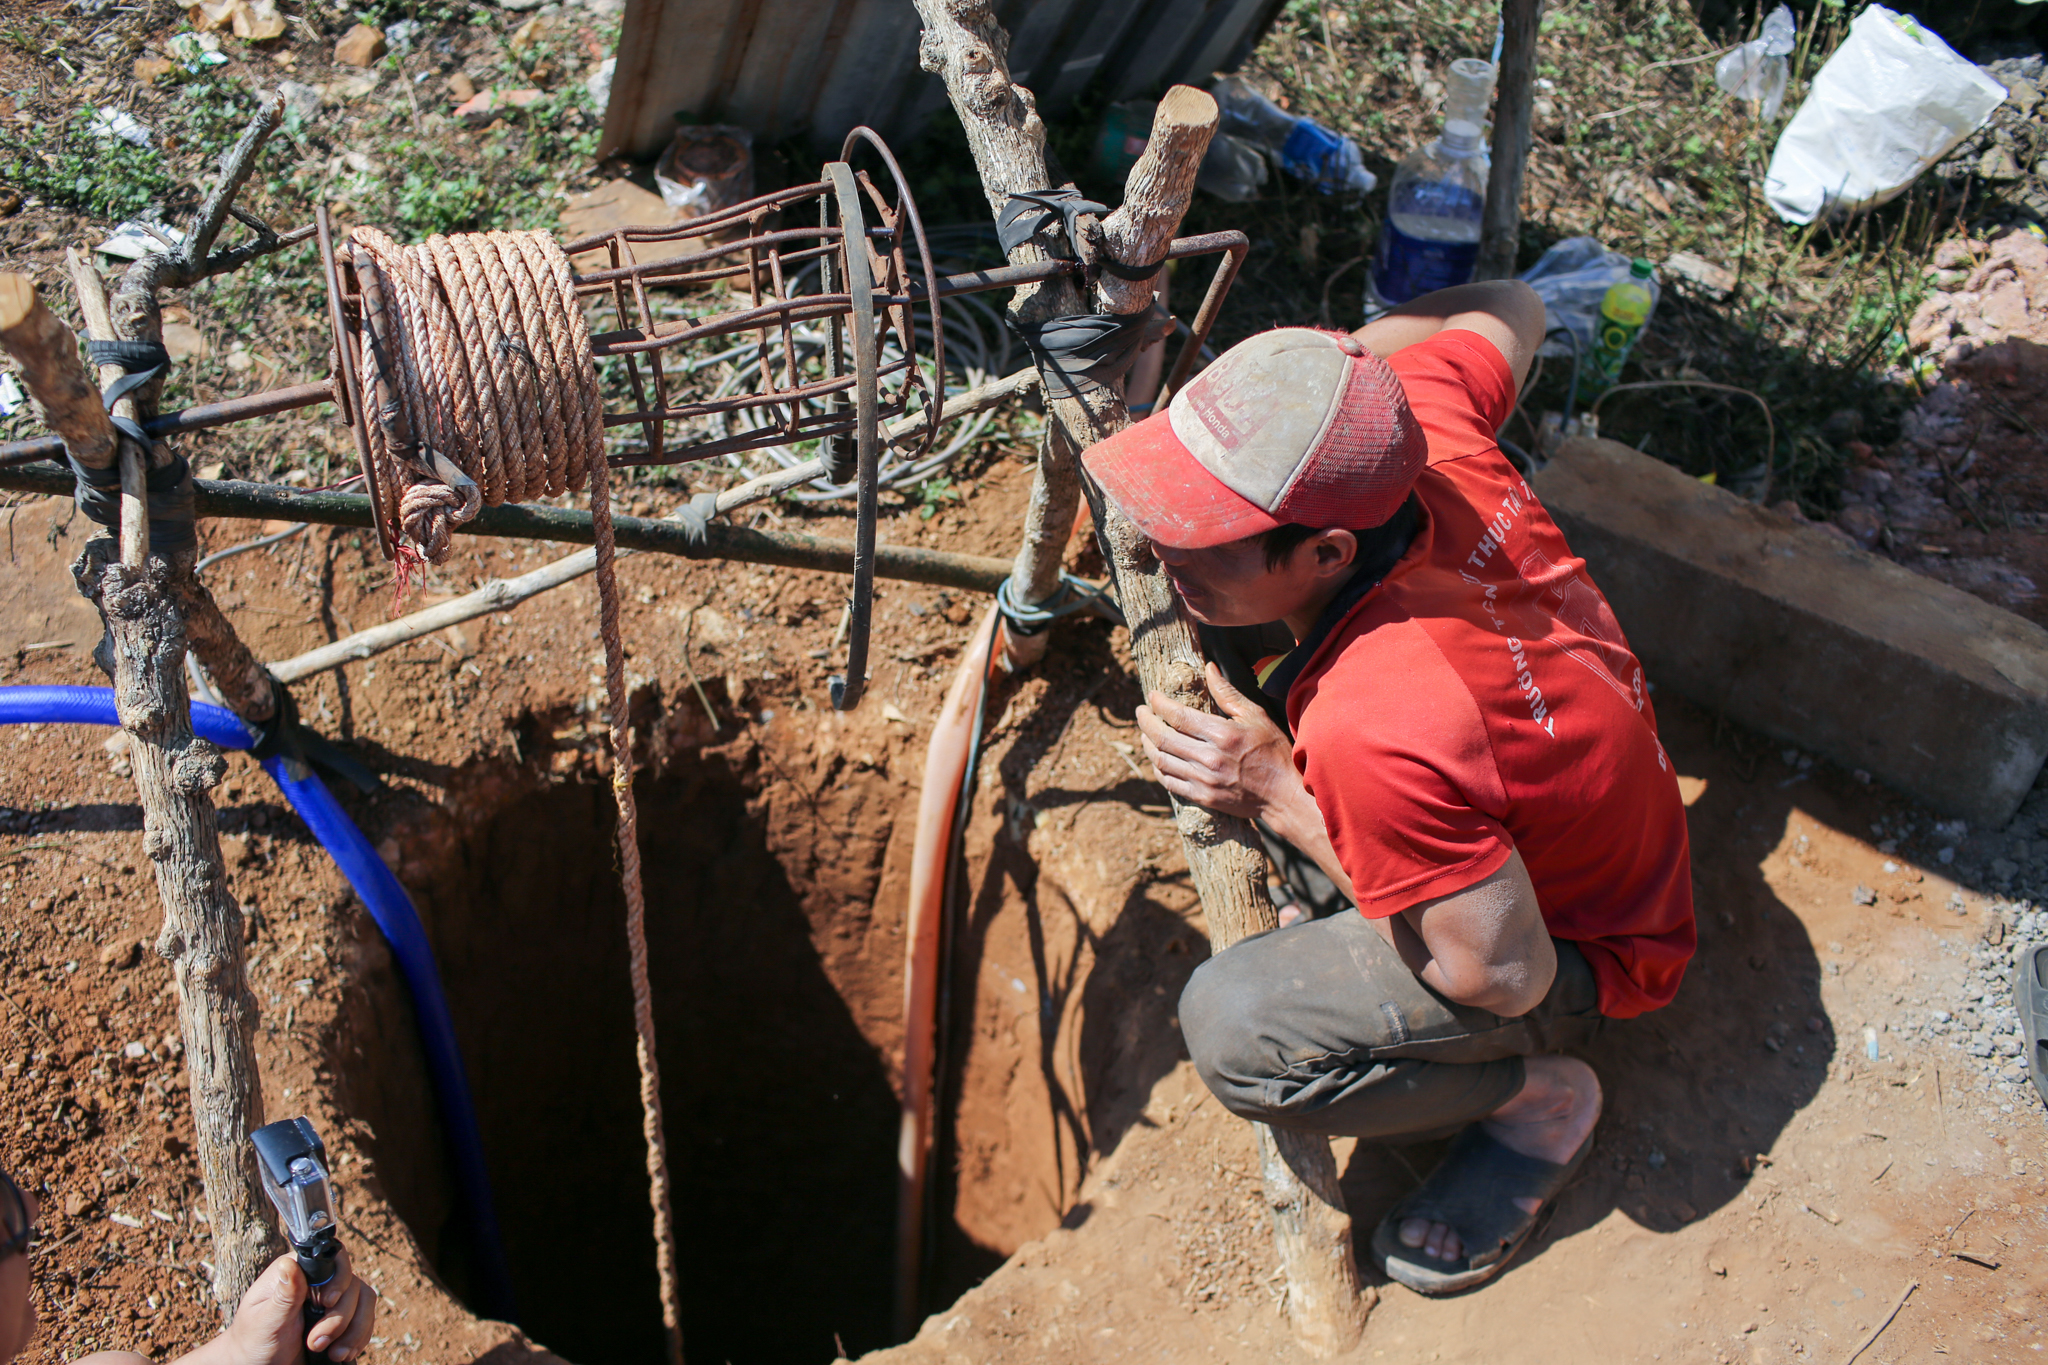 Khi mùa khô hạn kéo dài, nước trở nên khan hiếm và quý giá, thì nghề đào giếng ở Tây nguyên được xem như công việc ‘hái ra tiền.’ (Ảnh: Minh Sơn/Vietnam+)